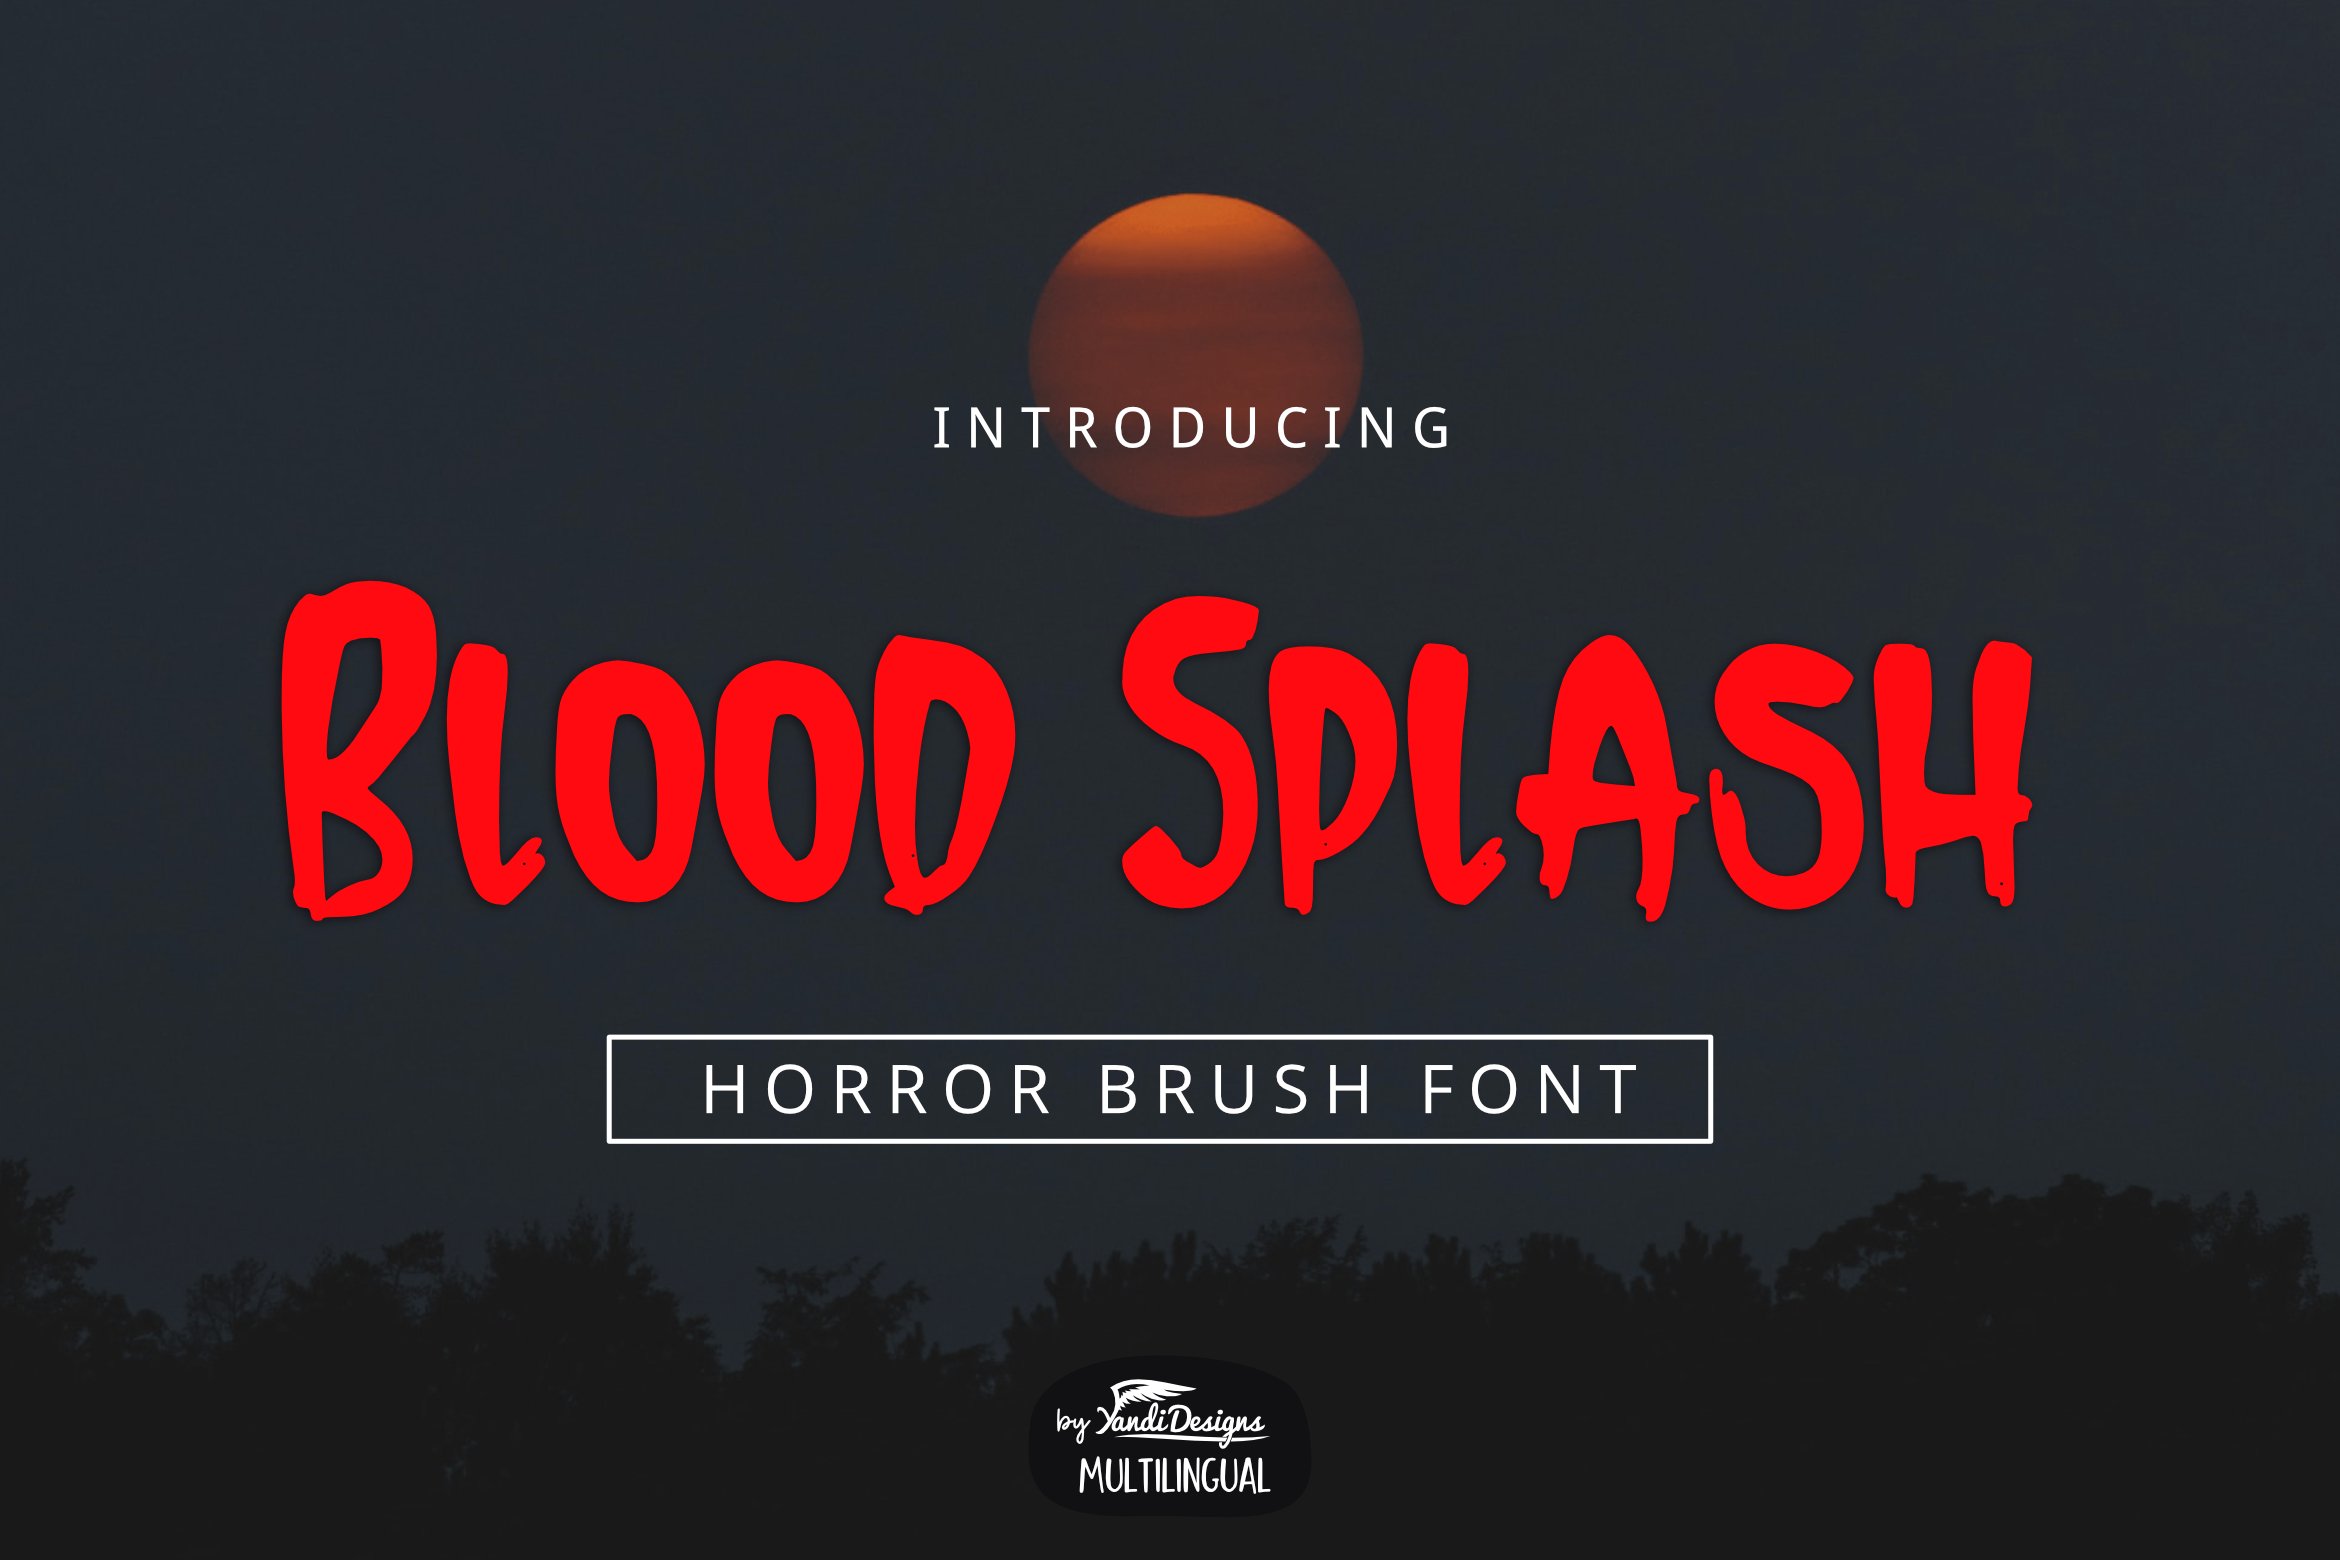 Blood Splash Font cover image.